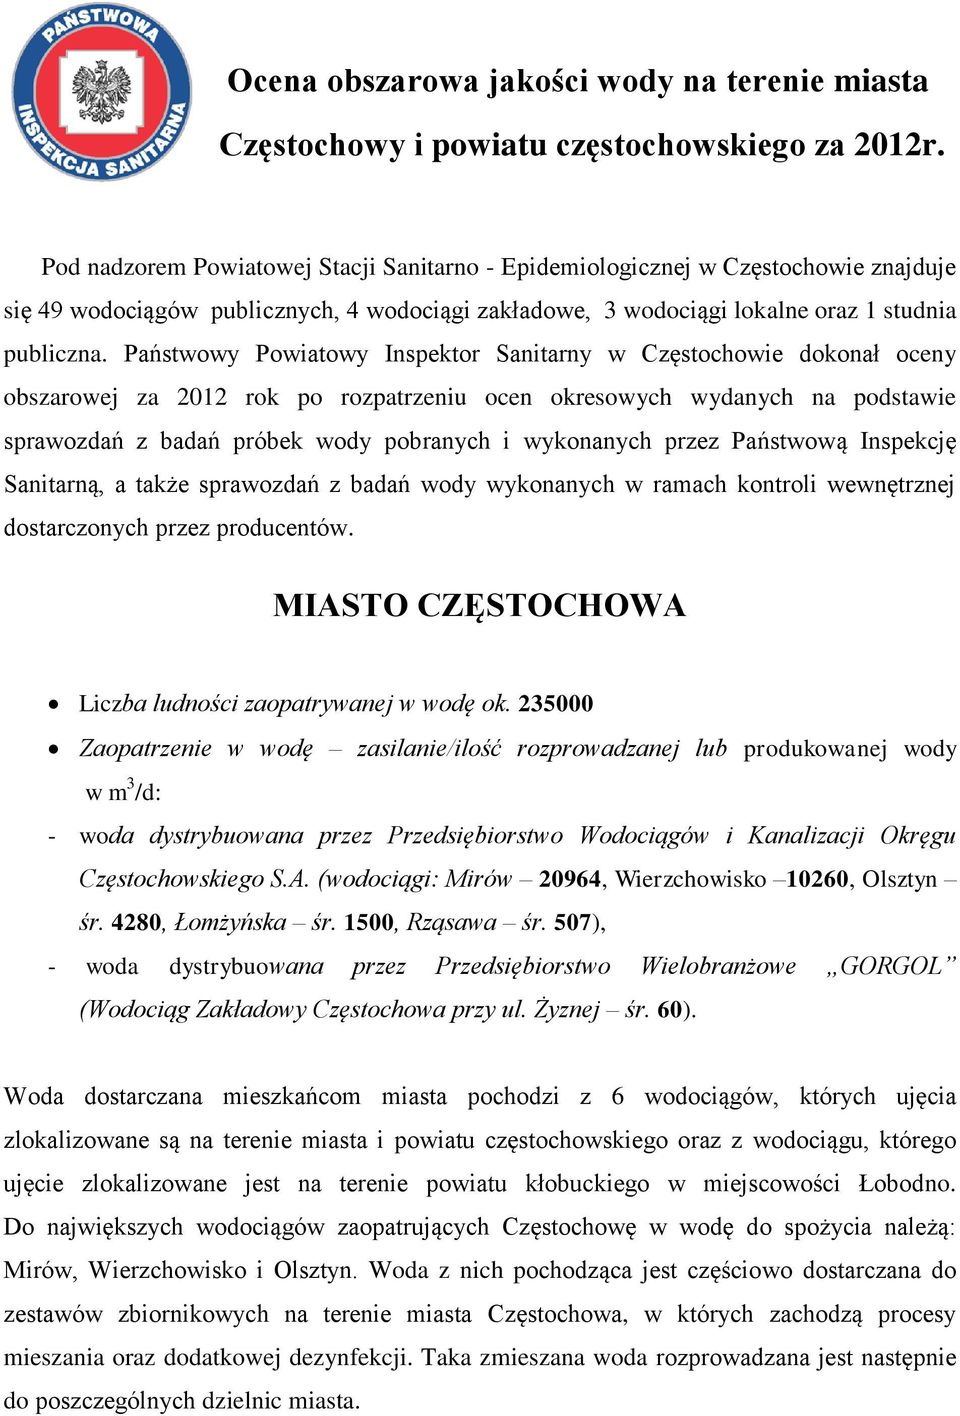 Państwowy Powiatowy Inspektor Sanitarny w Częstochowie dokonał oceny obszarowej za 2012 rok po rozpatrzeniu ocen okresowych wydanych na podstawie sprawozdań z badań próbek wody pobranych i wykonanych